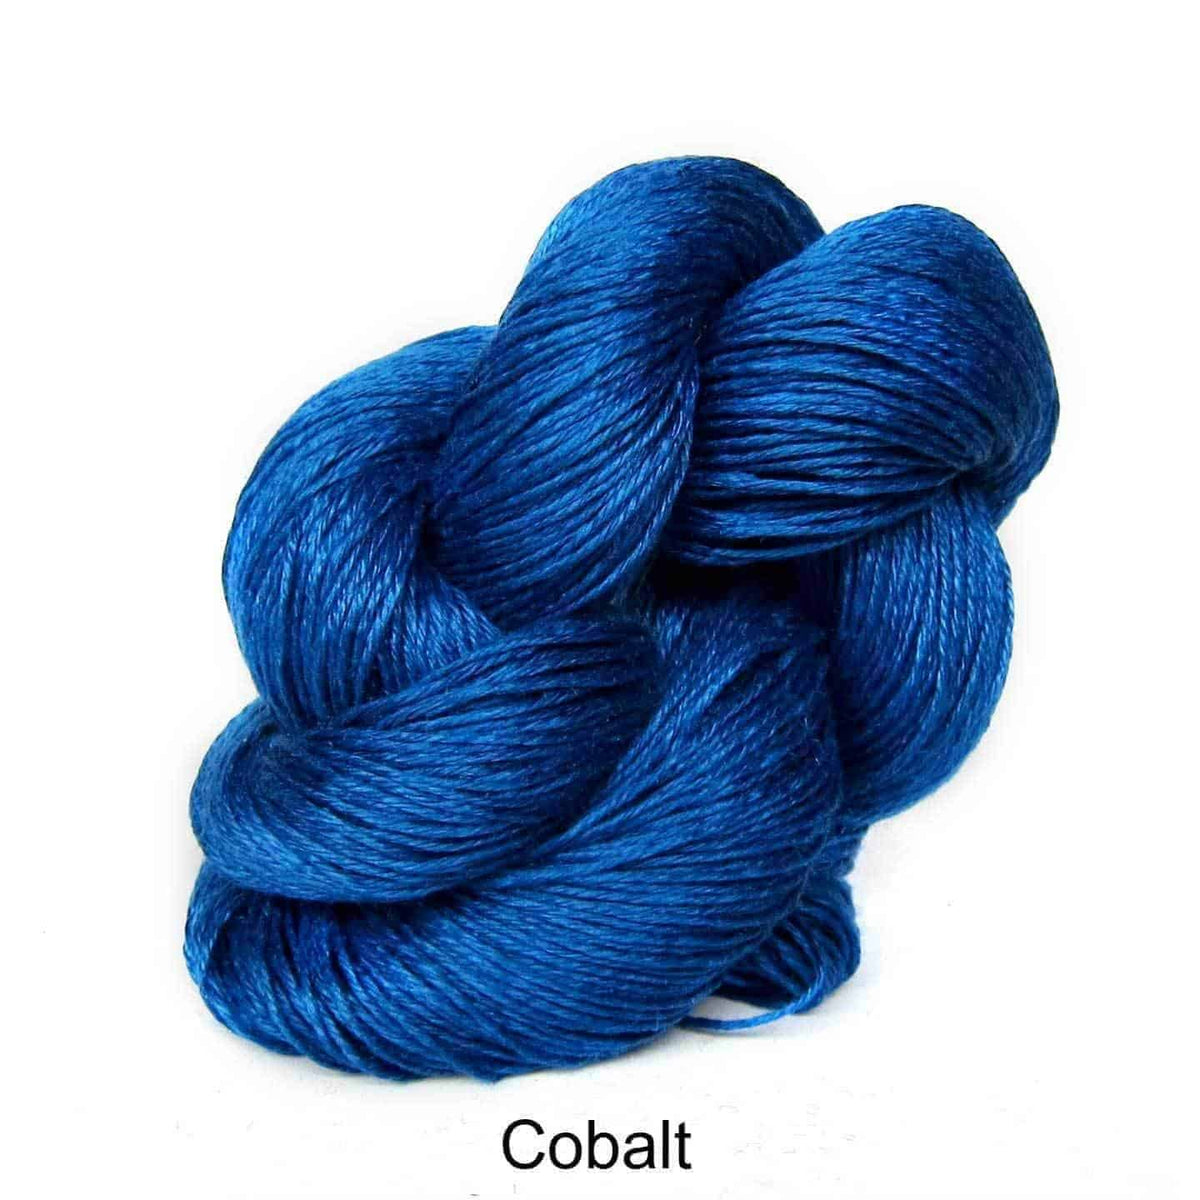 Euroflax Wet Spun Linen Yarn Cobalt 2594